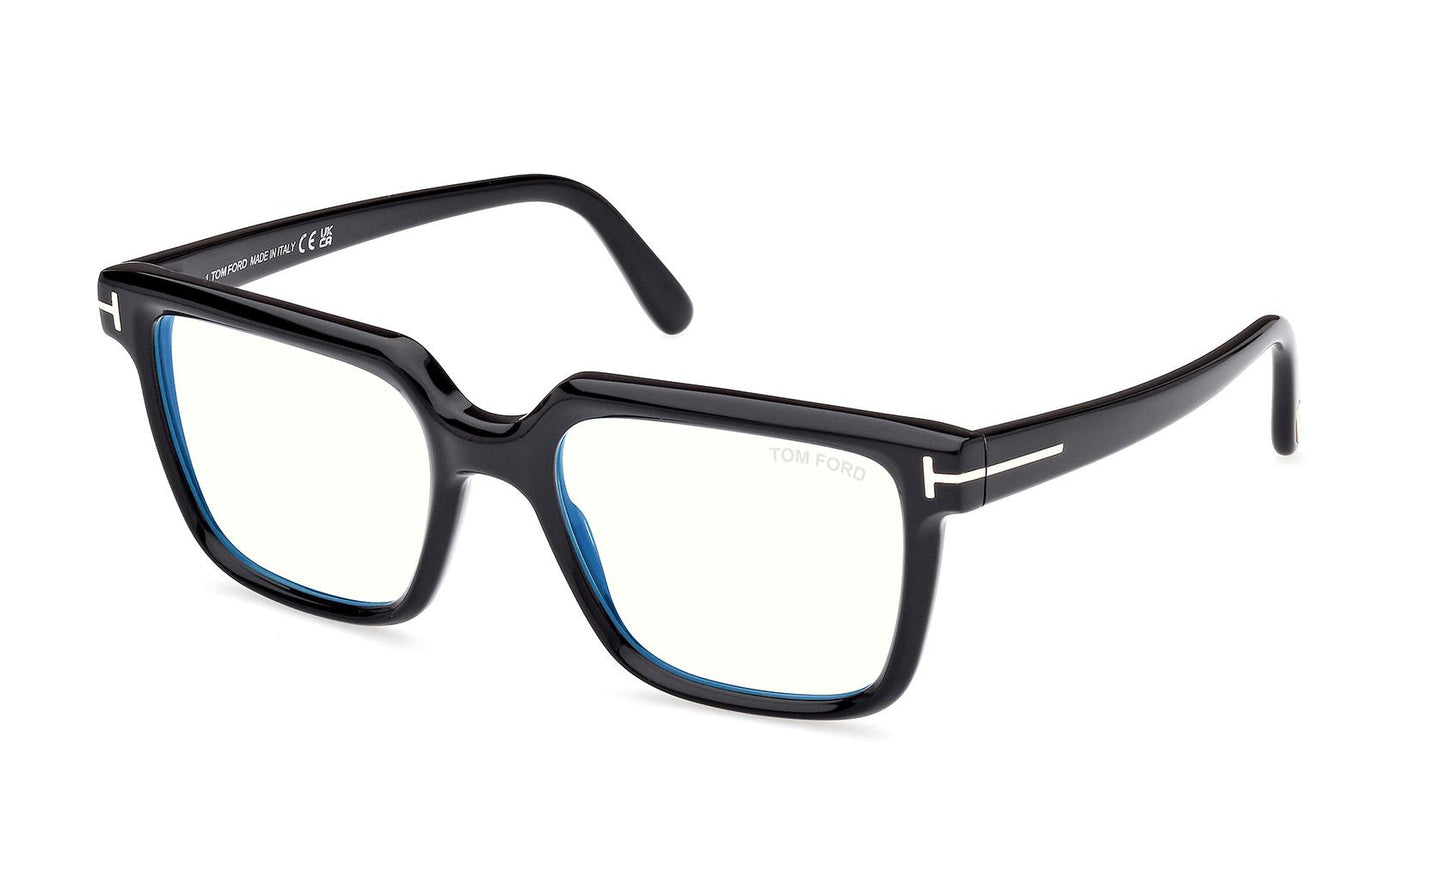 Tom Ford Eyeglasses FT5889/B 001